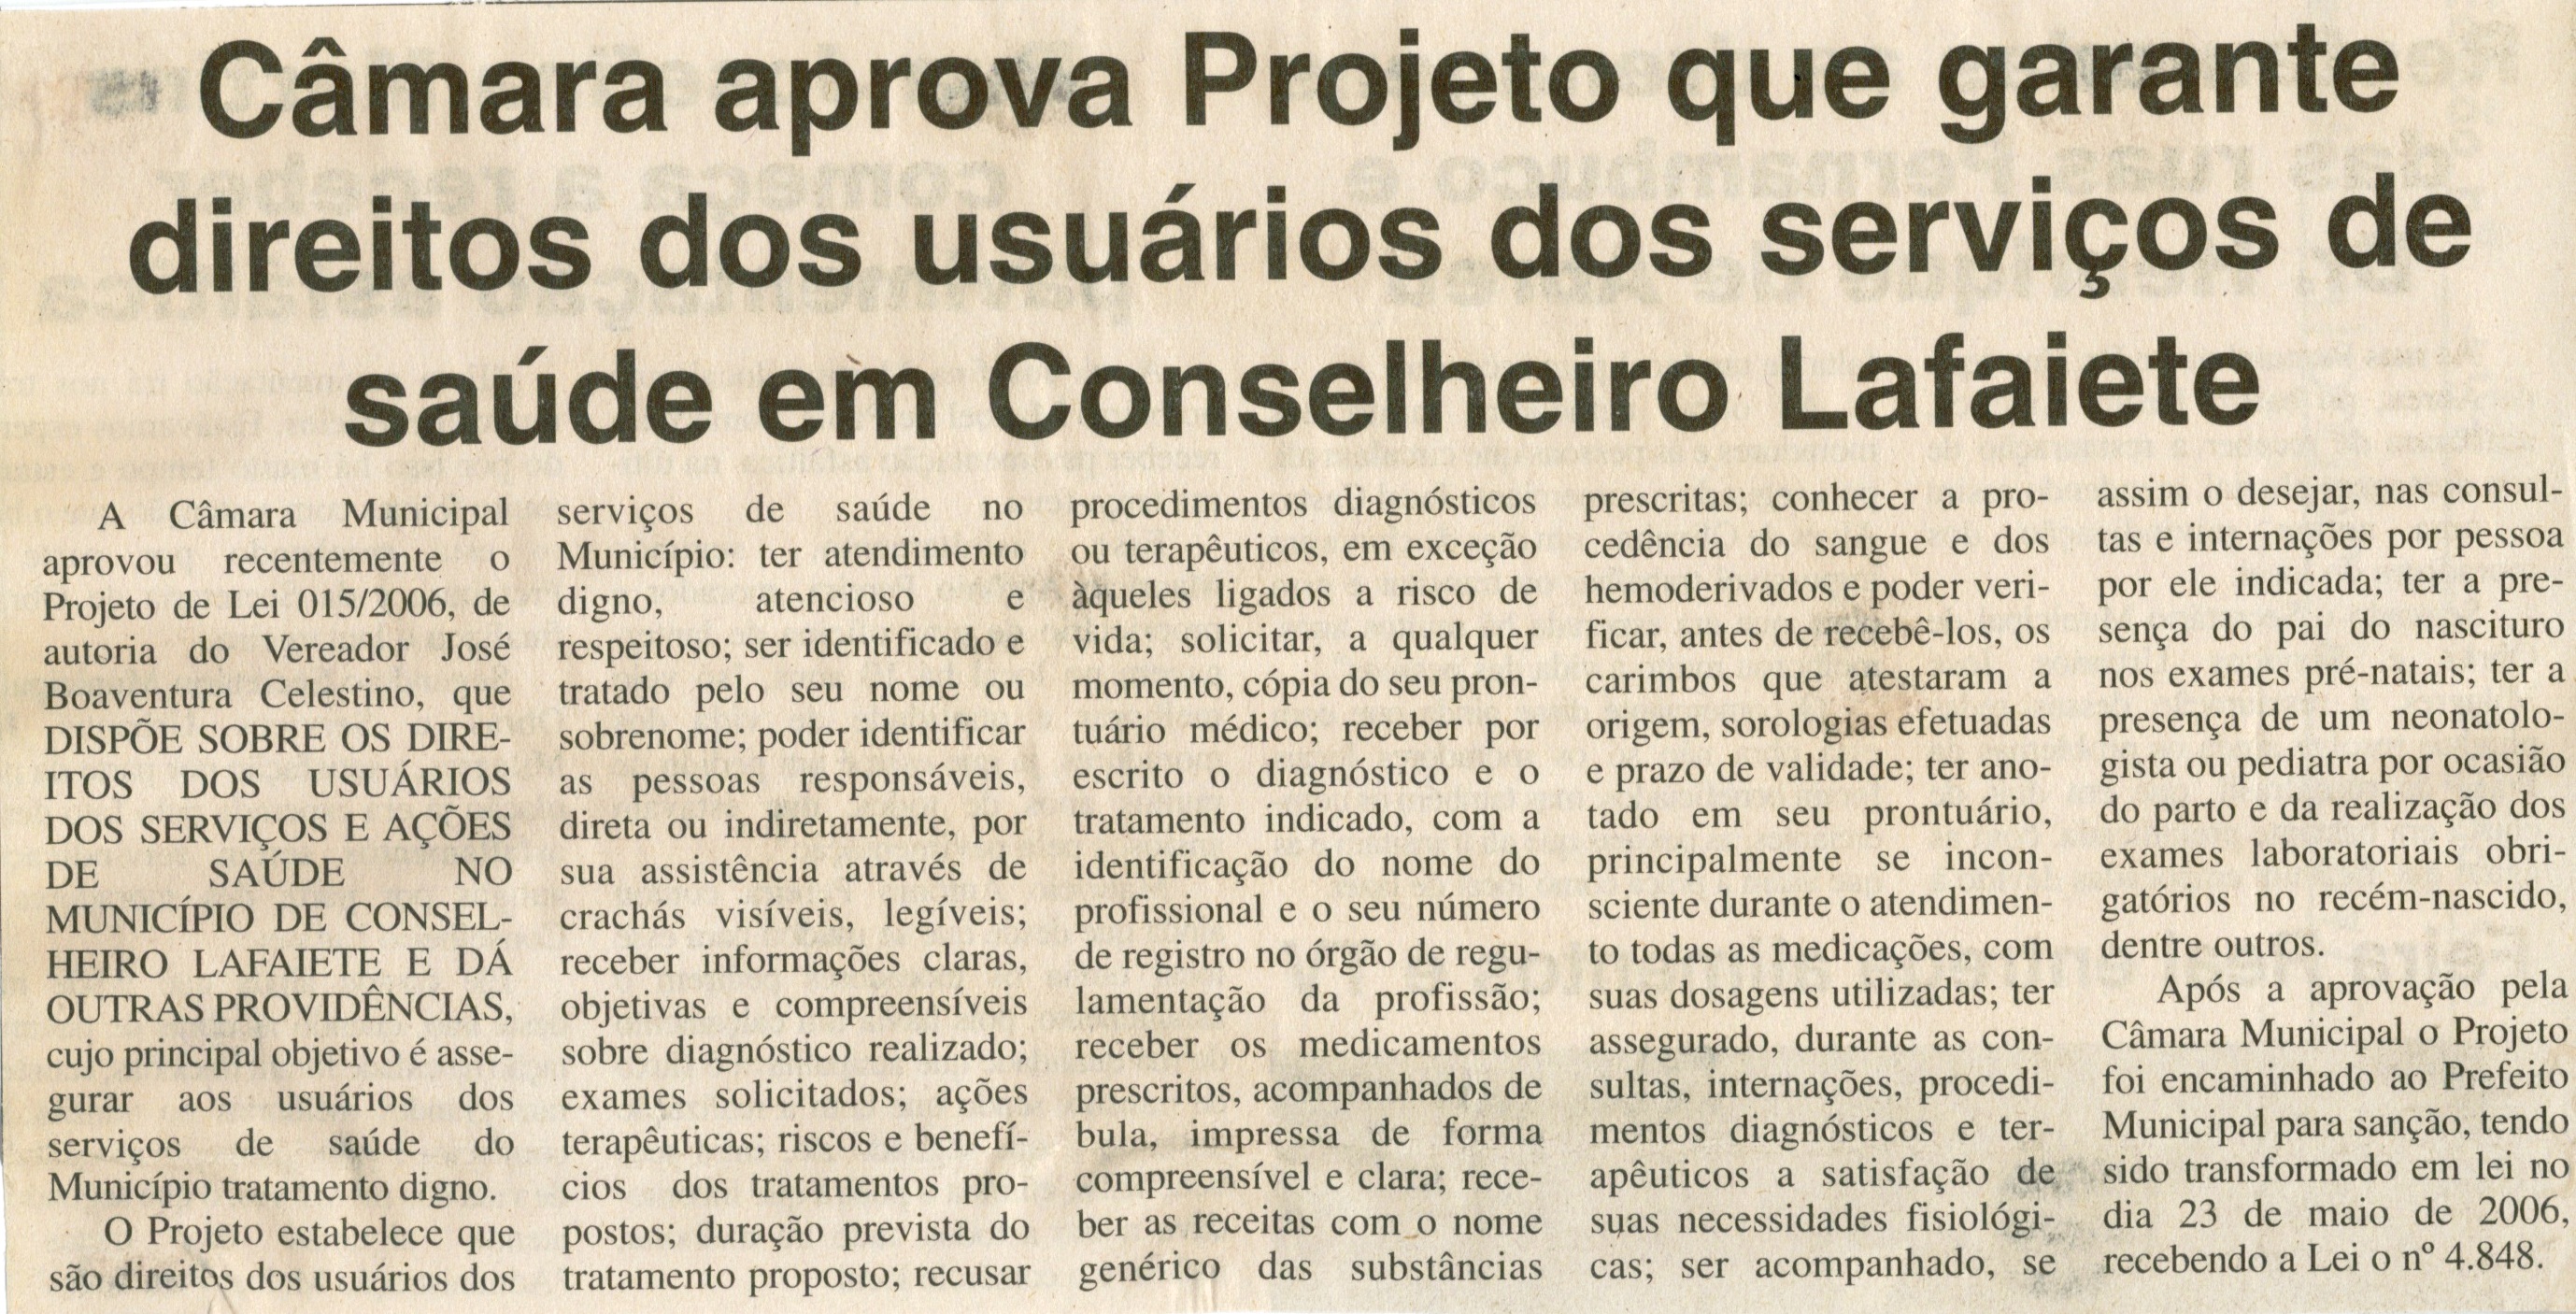 Câmara aprova Projeto que garante direitos dos usuários dos serviços de saúde em Conselheiro Lafaiete. Jornal O Dossiê, Conselheiro Lafaiete, 14 jul. de 2006, ed. 119, p. 05.